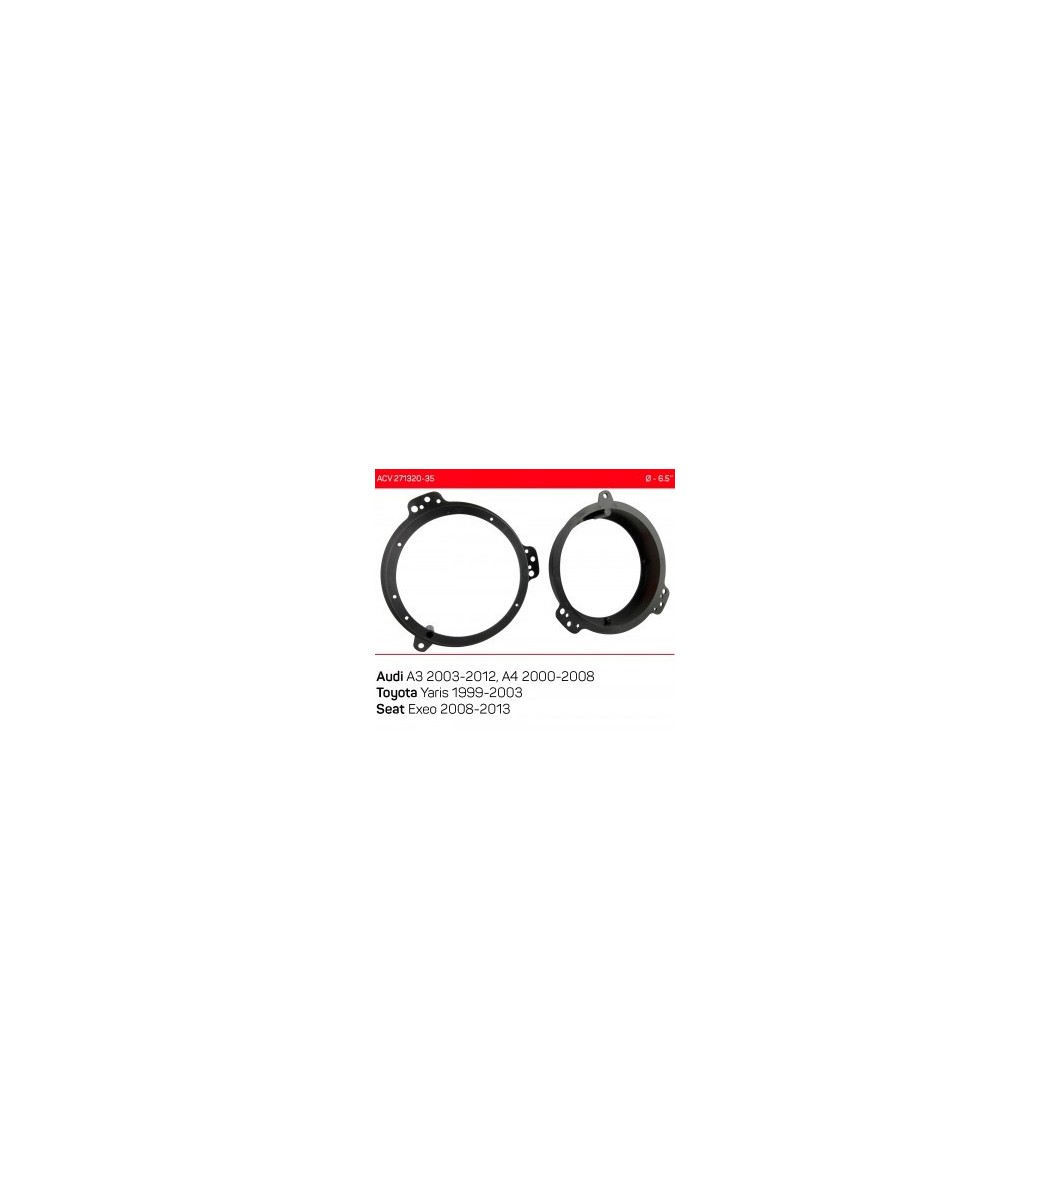 Loudspeaker rings Audi/Toyota/Seat 16.5cm